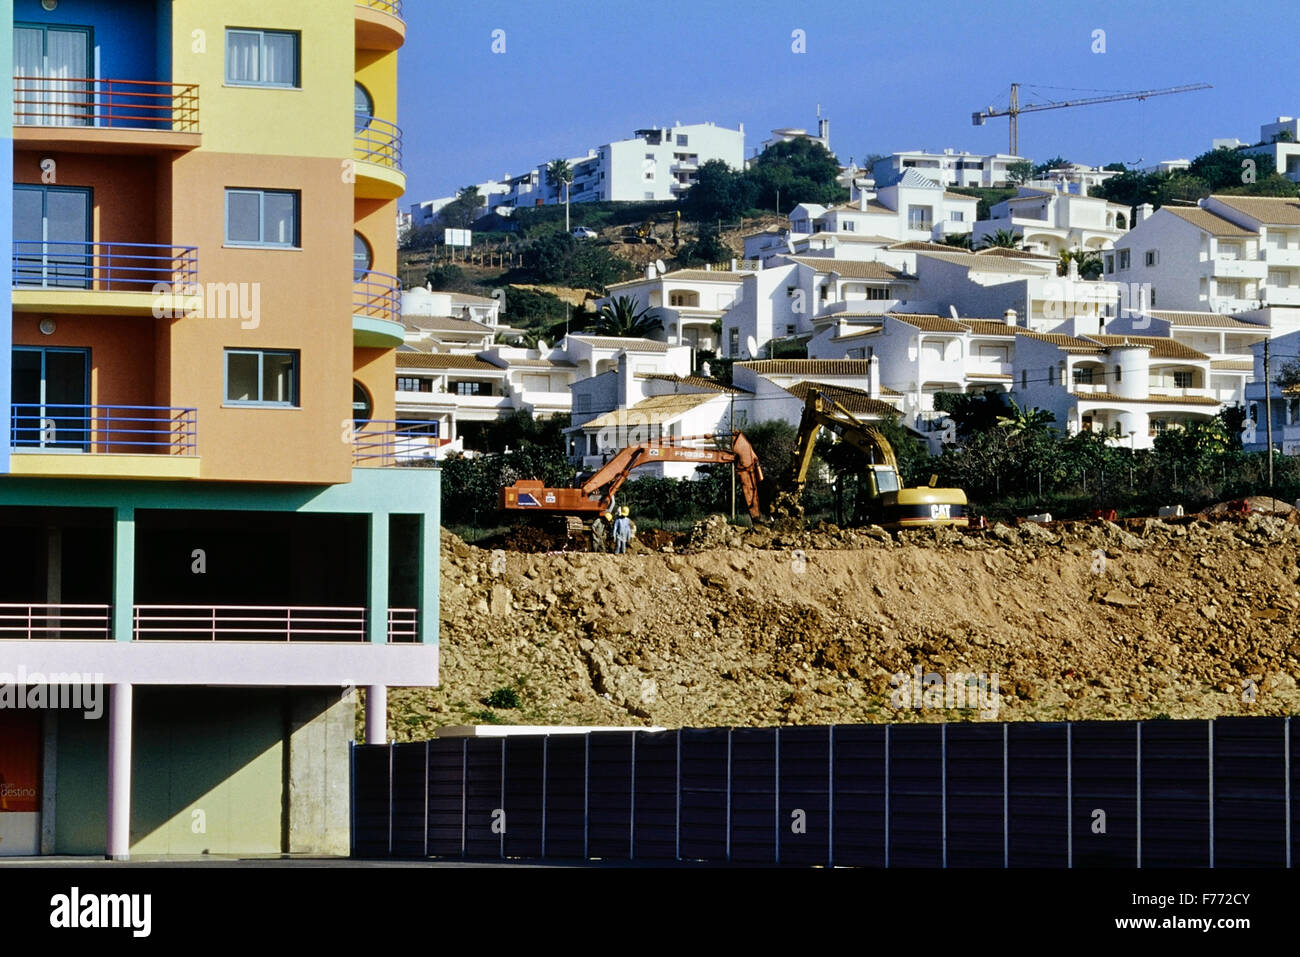 Property development in the Algarve. Portugal Stock Photo